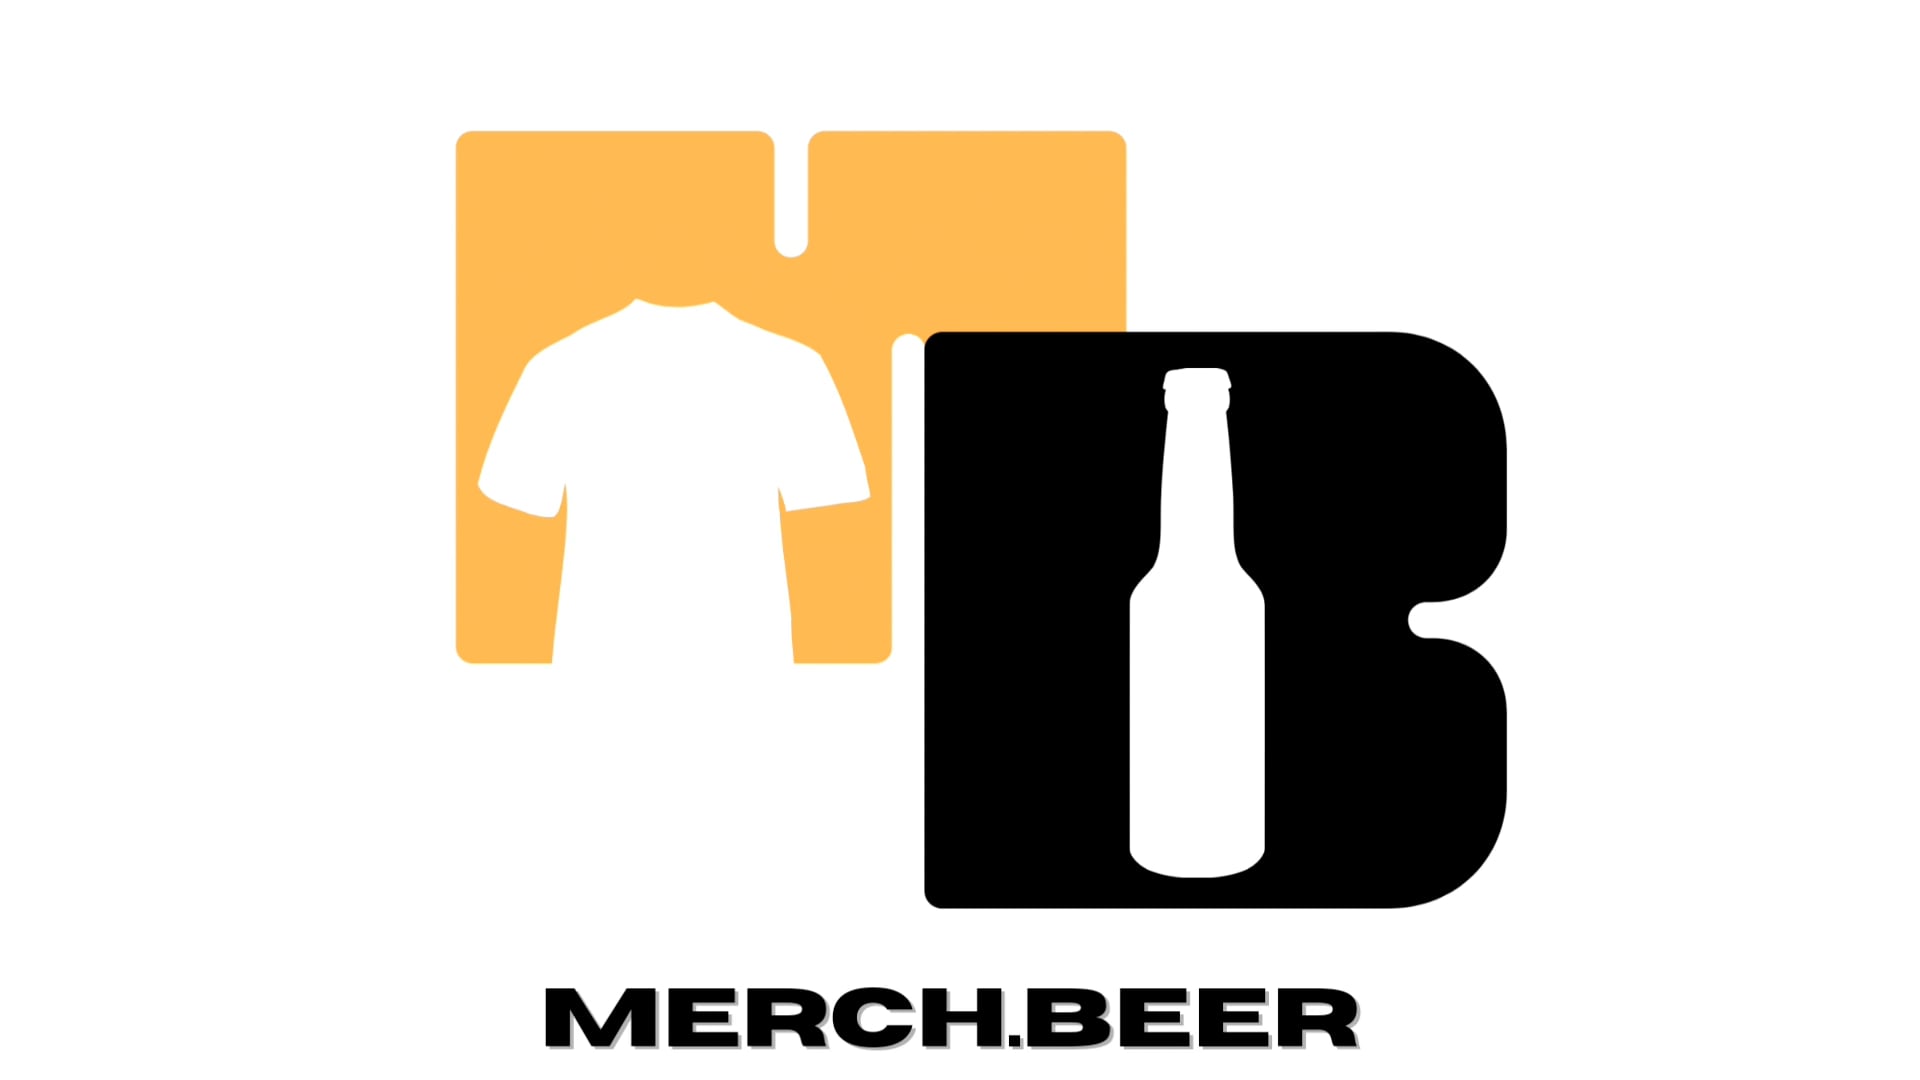 Merch.Beer